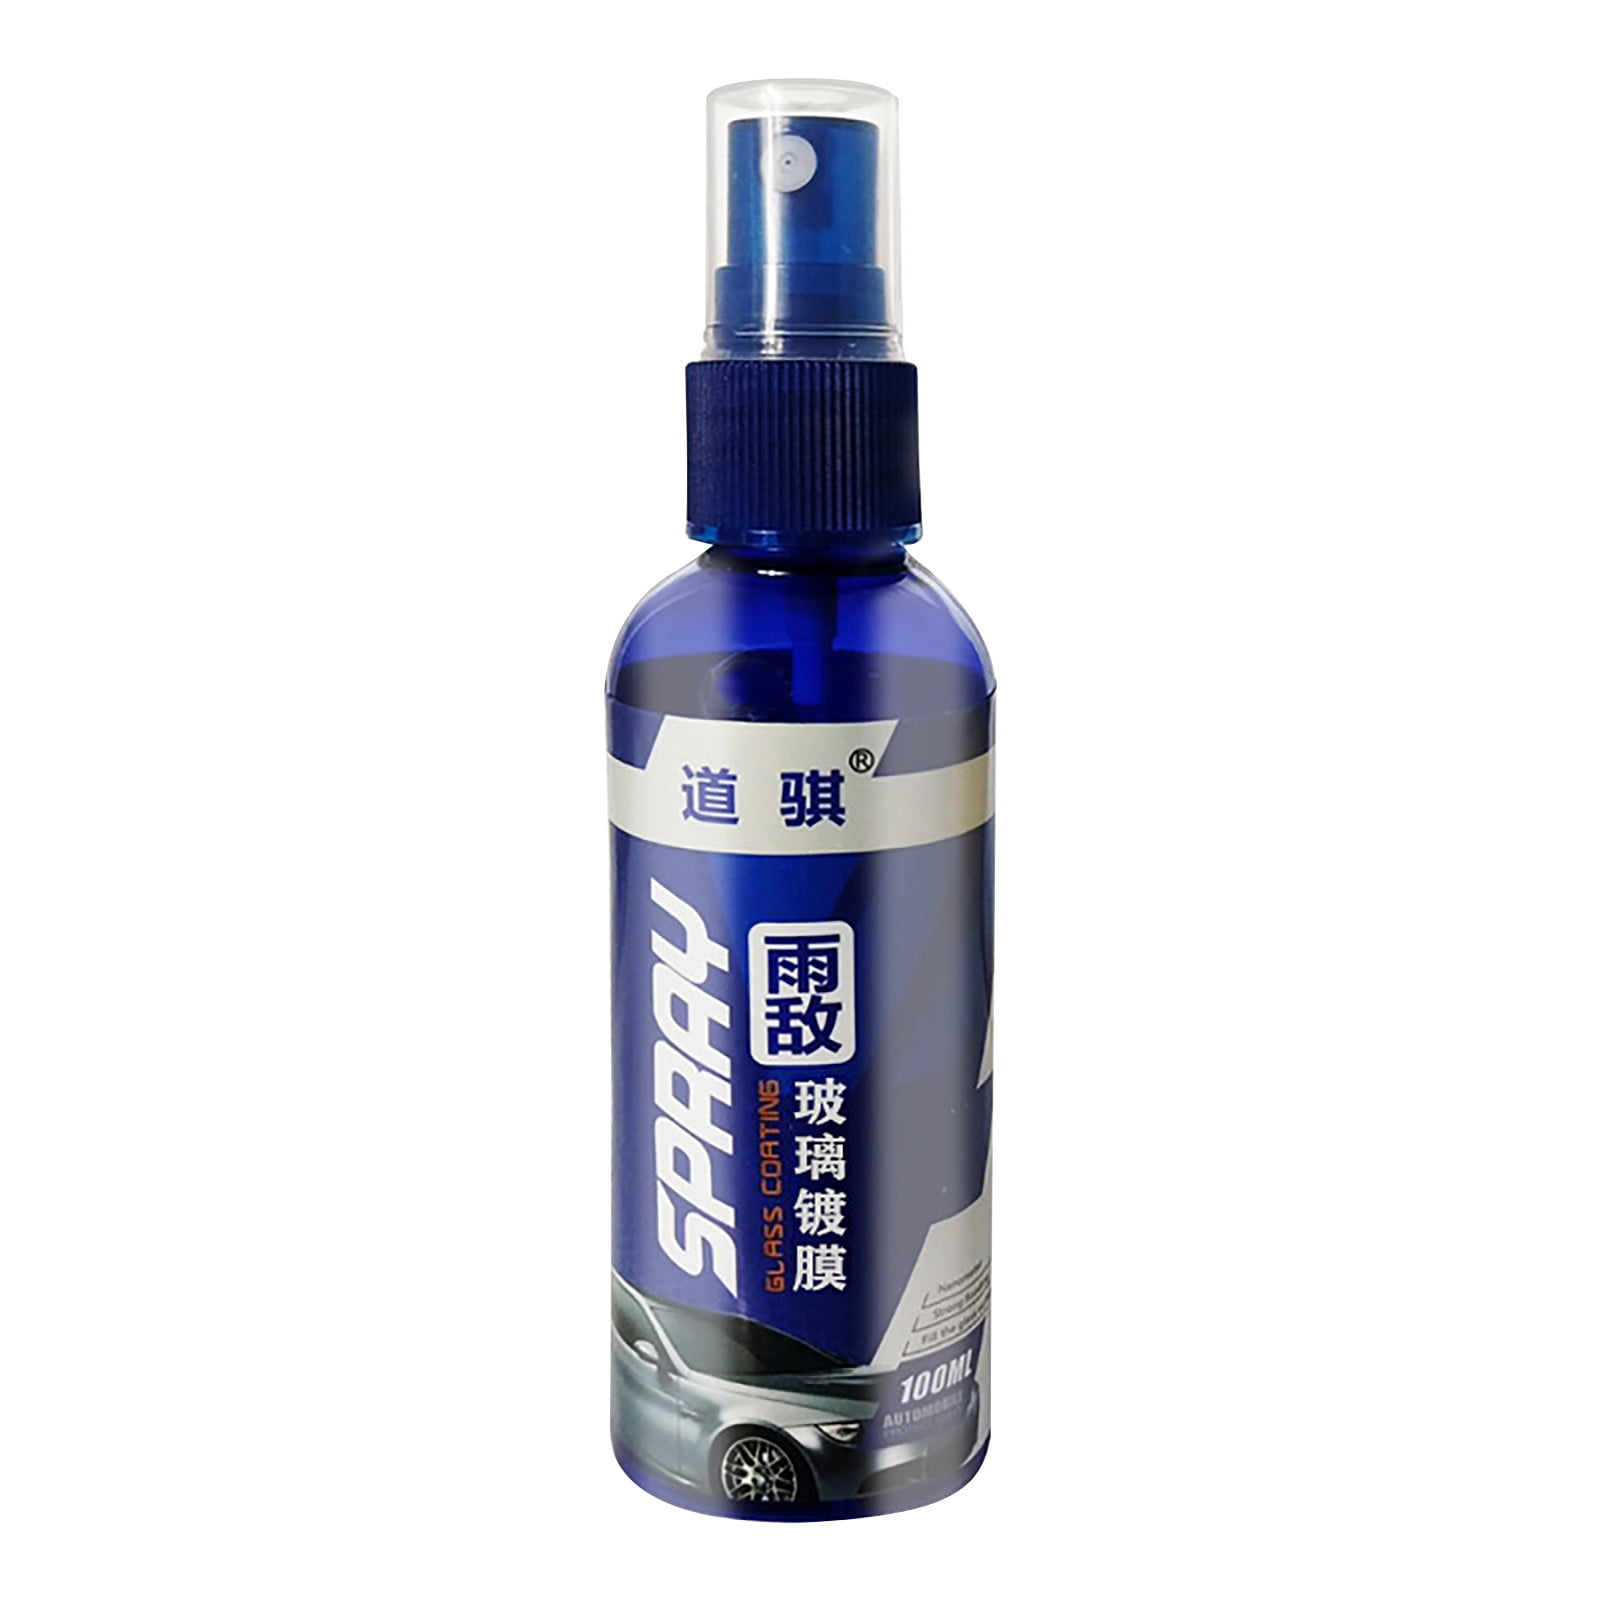 30 ml Auto-Windschutzscheibe Anti-Regen-Mittel Rückspiegel-Repellent-Agent  Autoglas Anti-Wasser-Spray